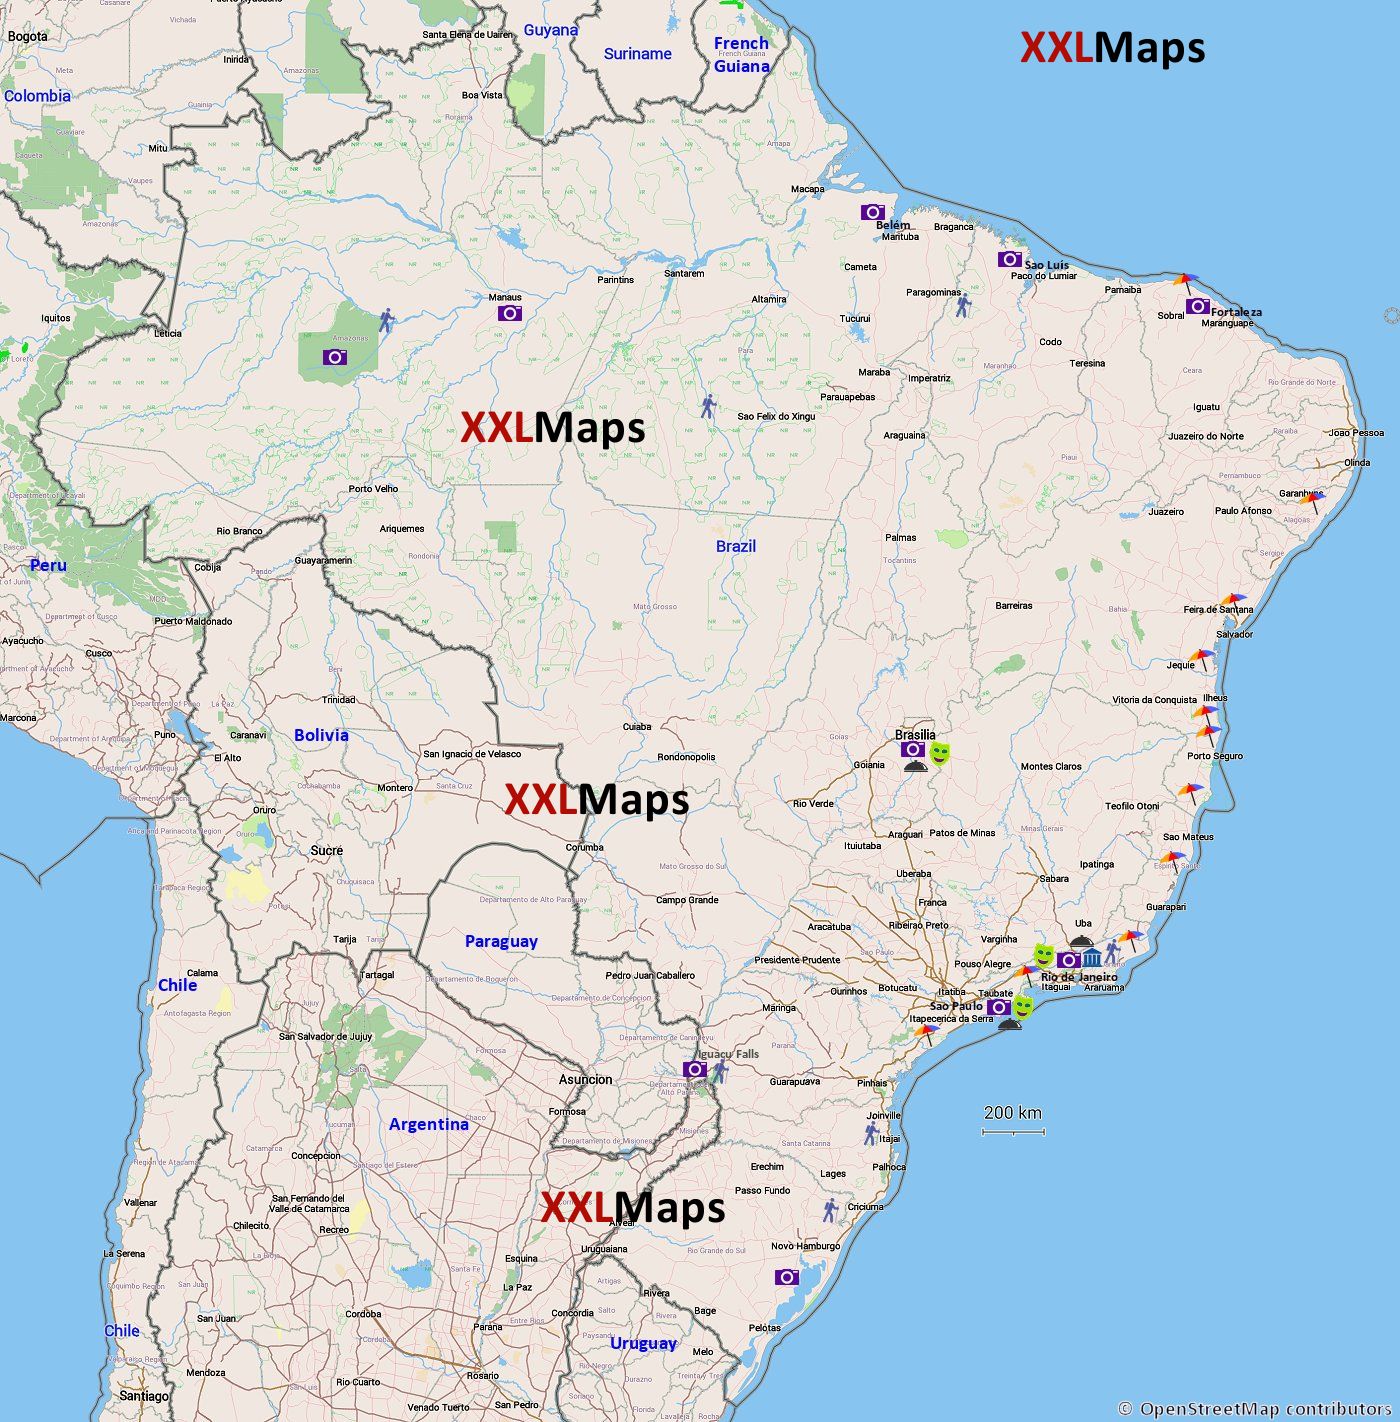 Toeristische kaart van Brazilië